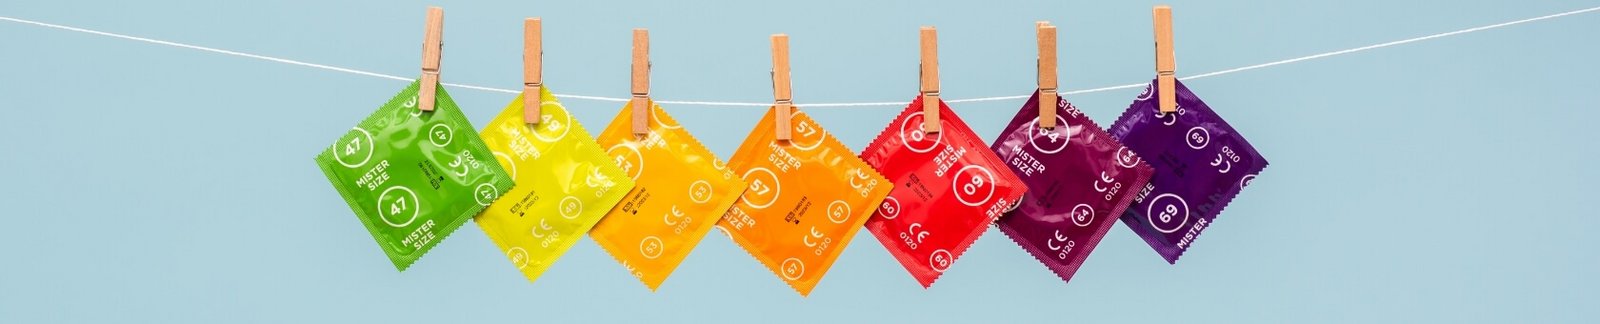 Kondomy Mister Size různých velikostí na lince